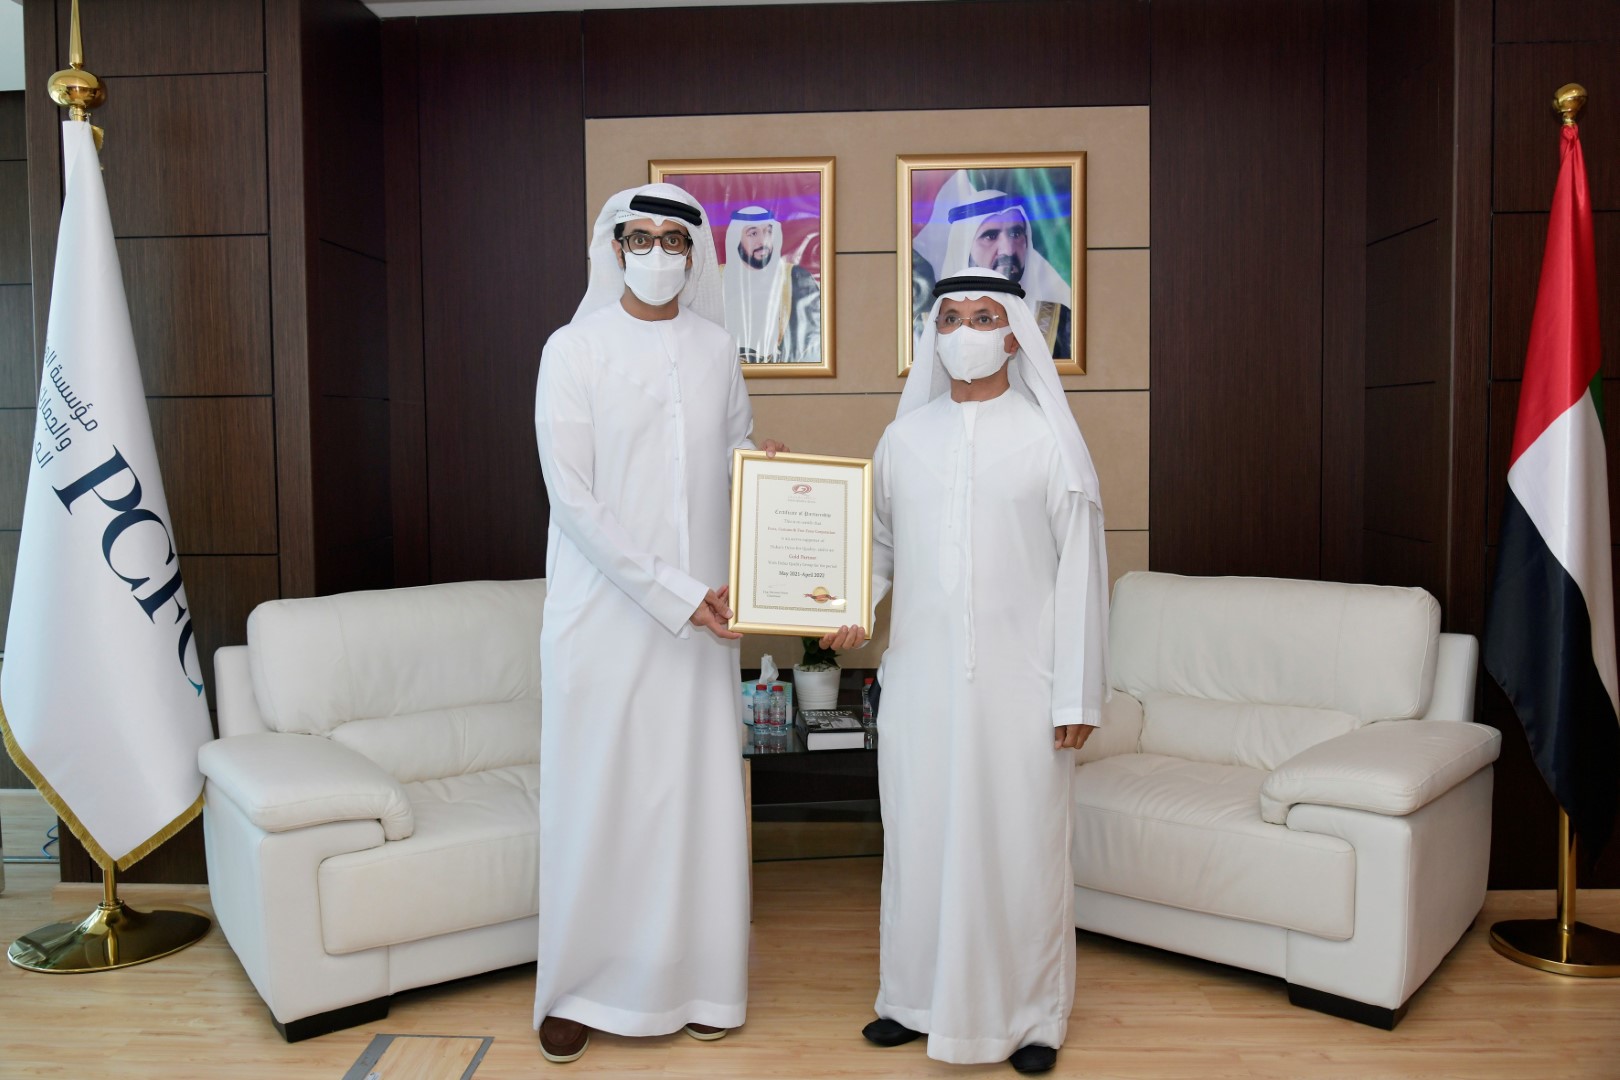 وكالة أنباء الإمارات - "مؤسسة الموانئ والجمارك بدبي" تنضم إلى "مجموعة دبي للجودة" كشريك ذهبي - اخبار الامارات ENN